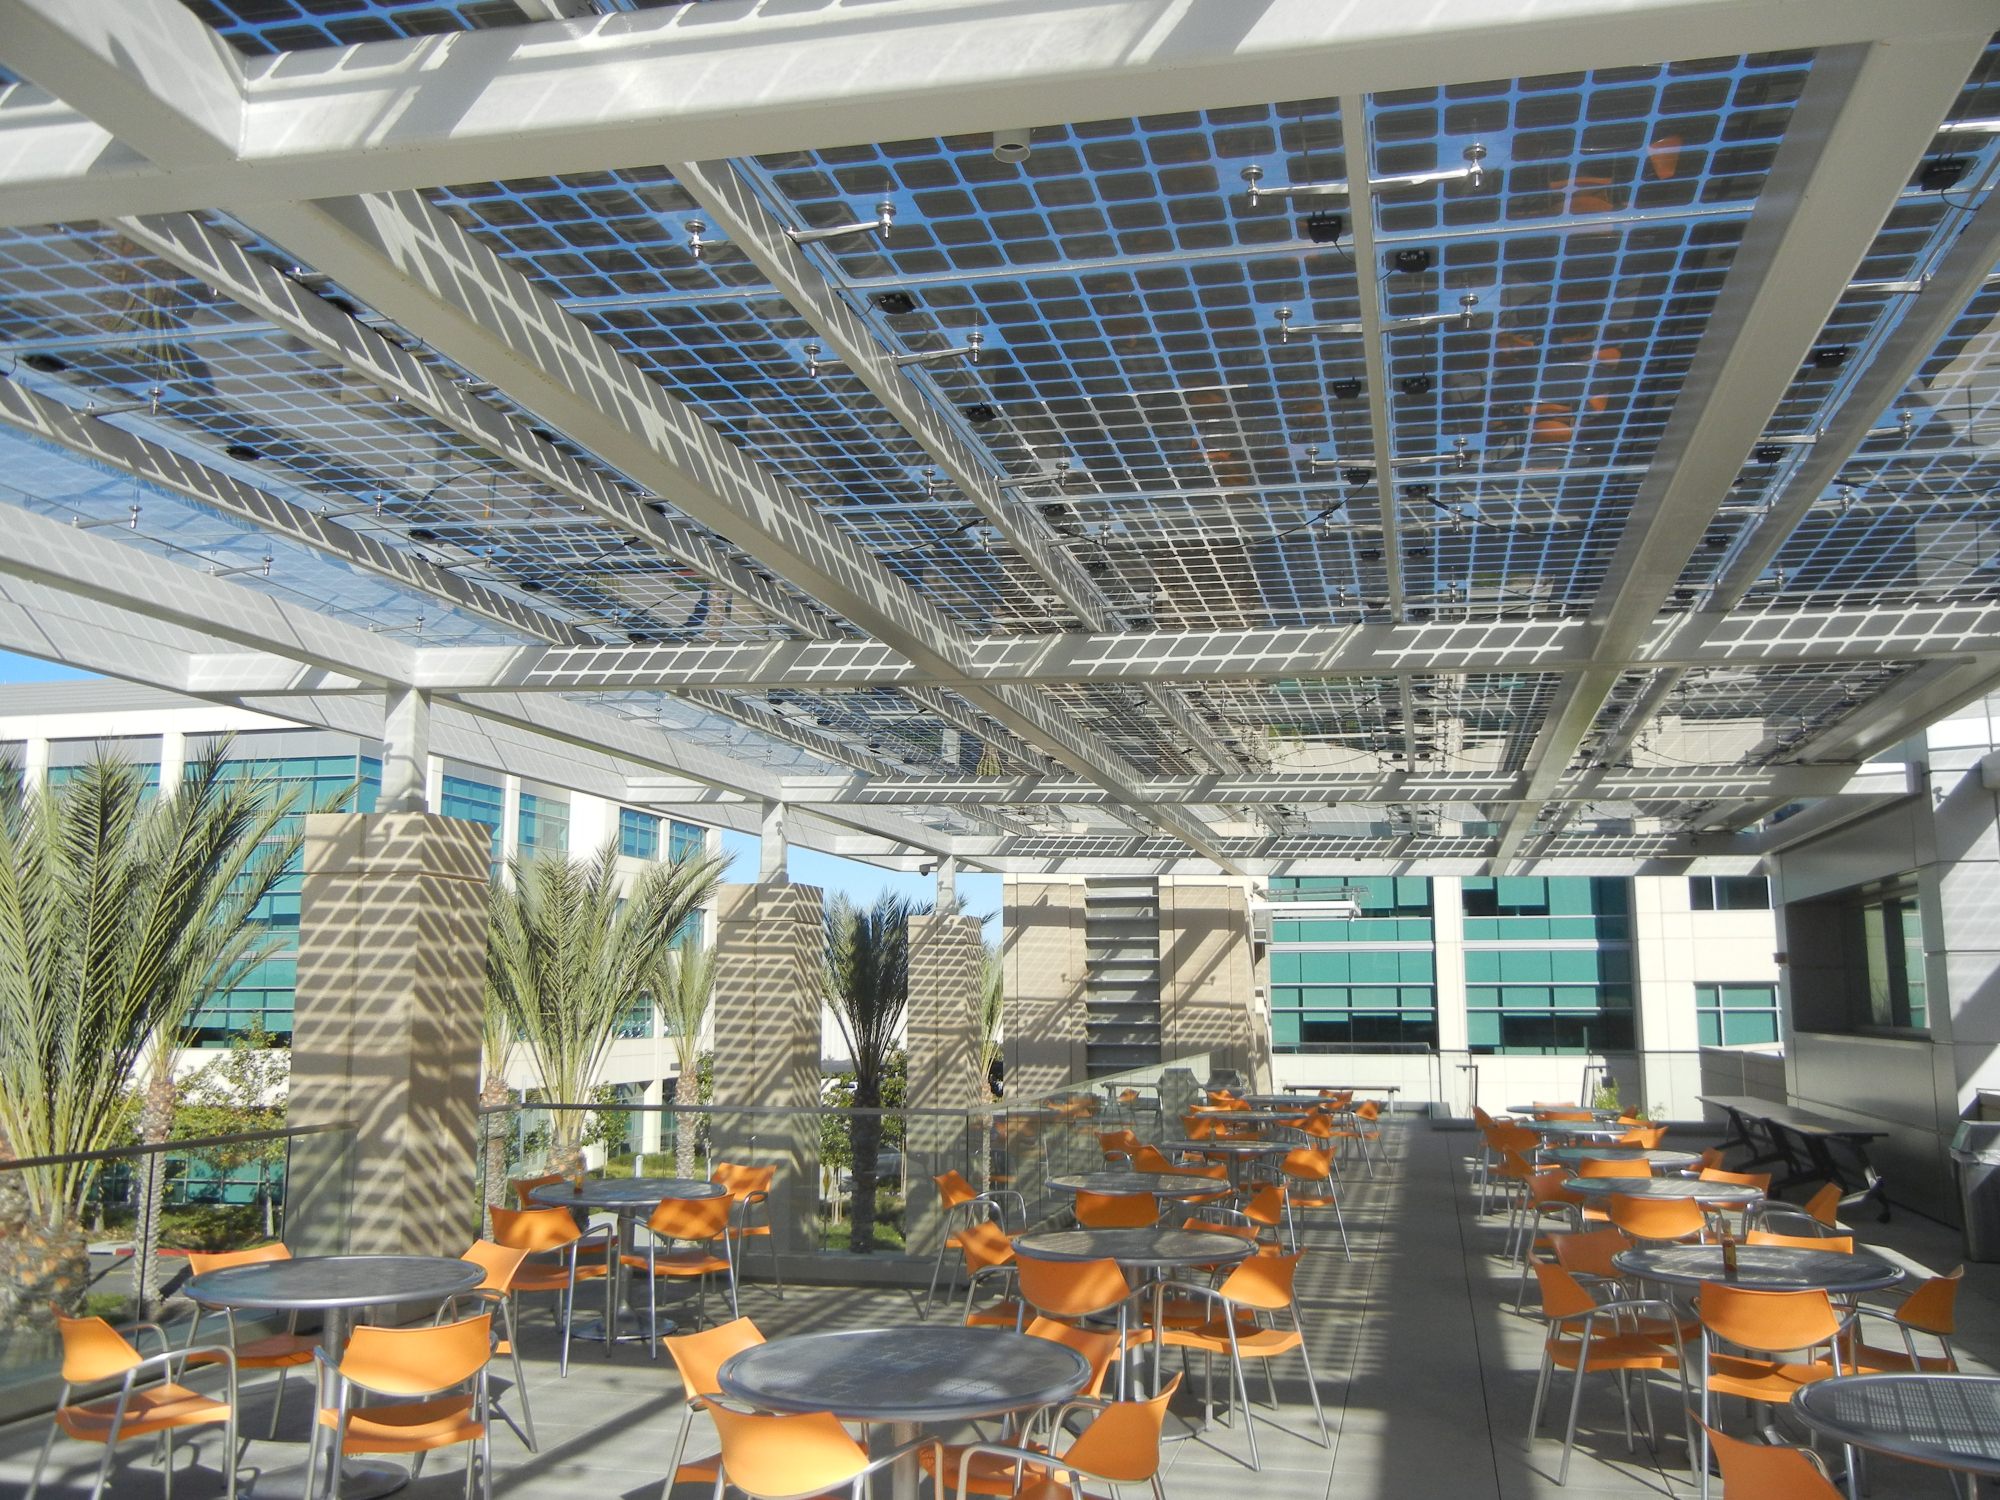 Panel solar transparente 50% para cerrar espacios